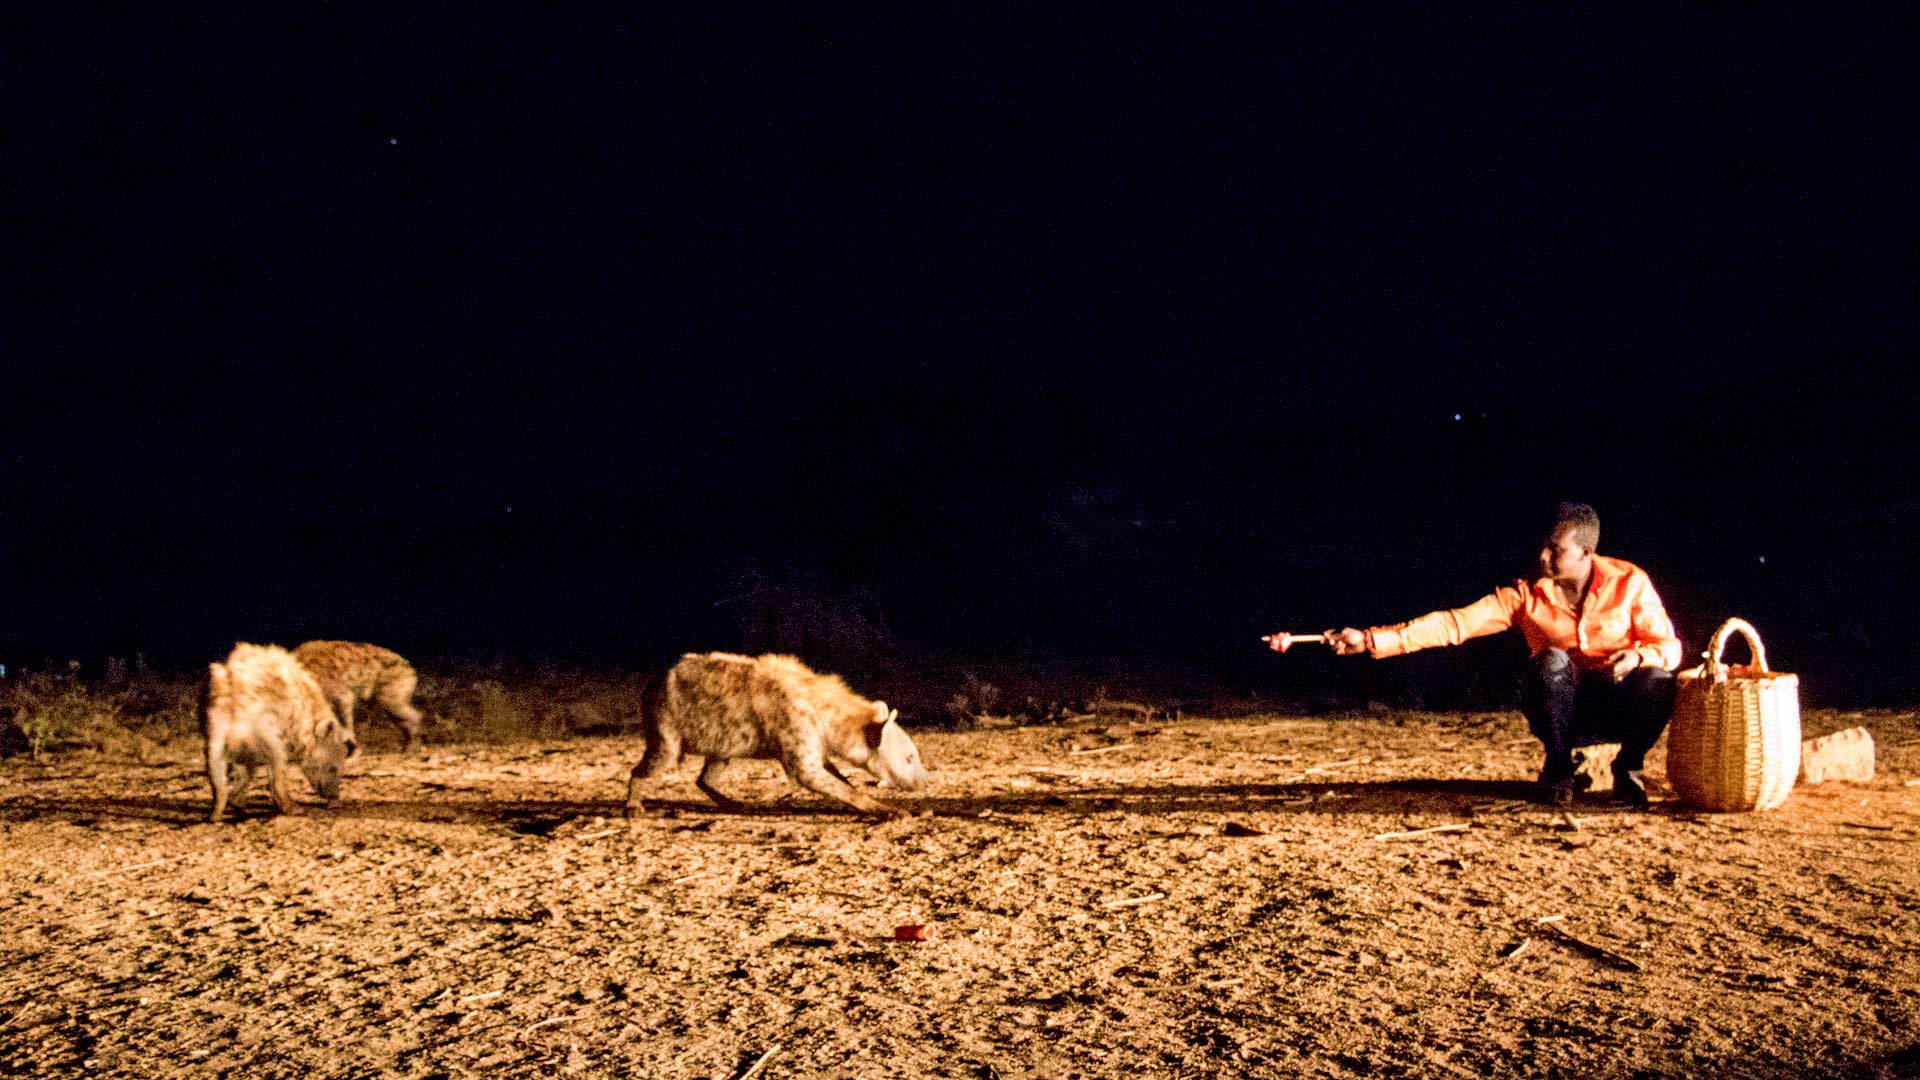 man feeding hyenas at night